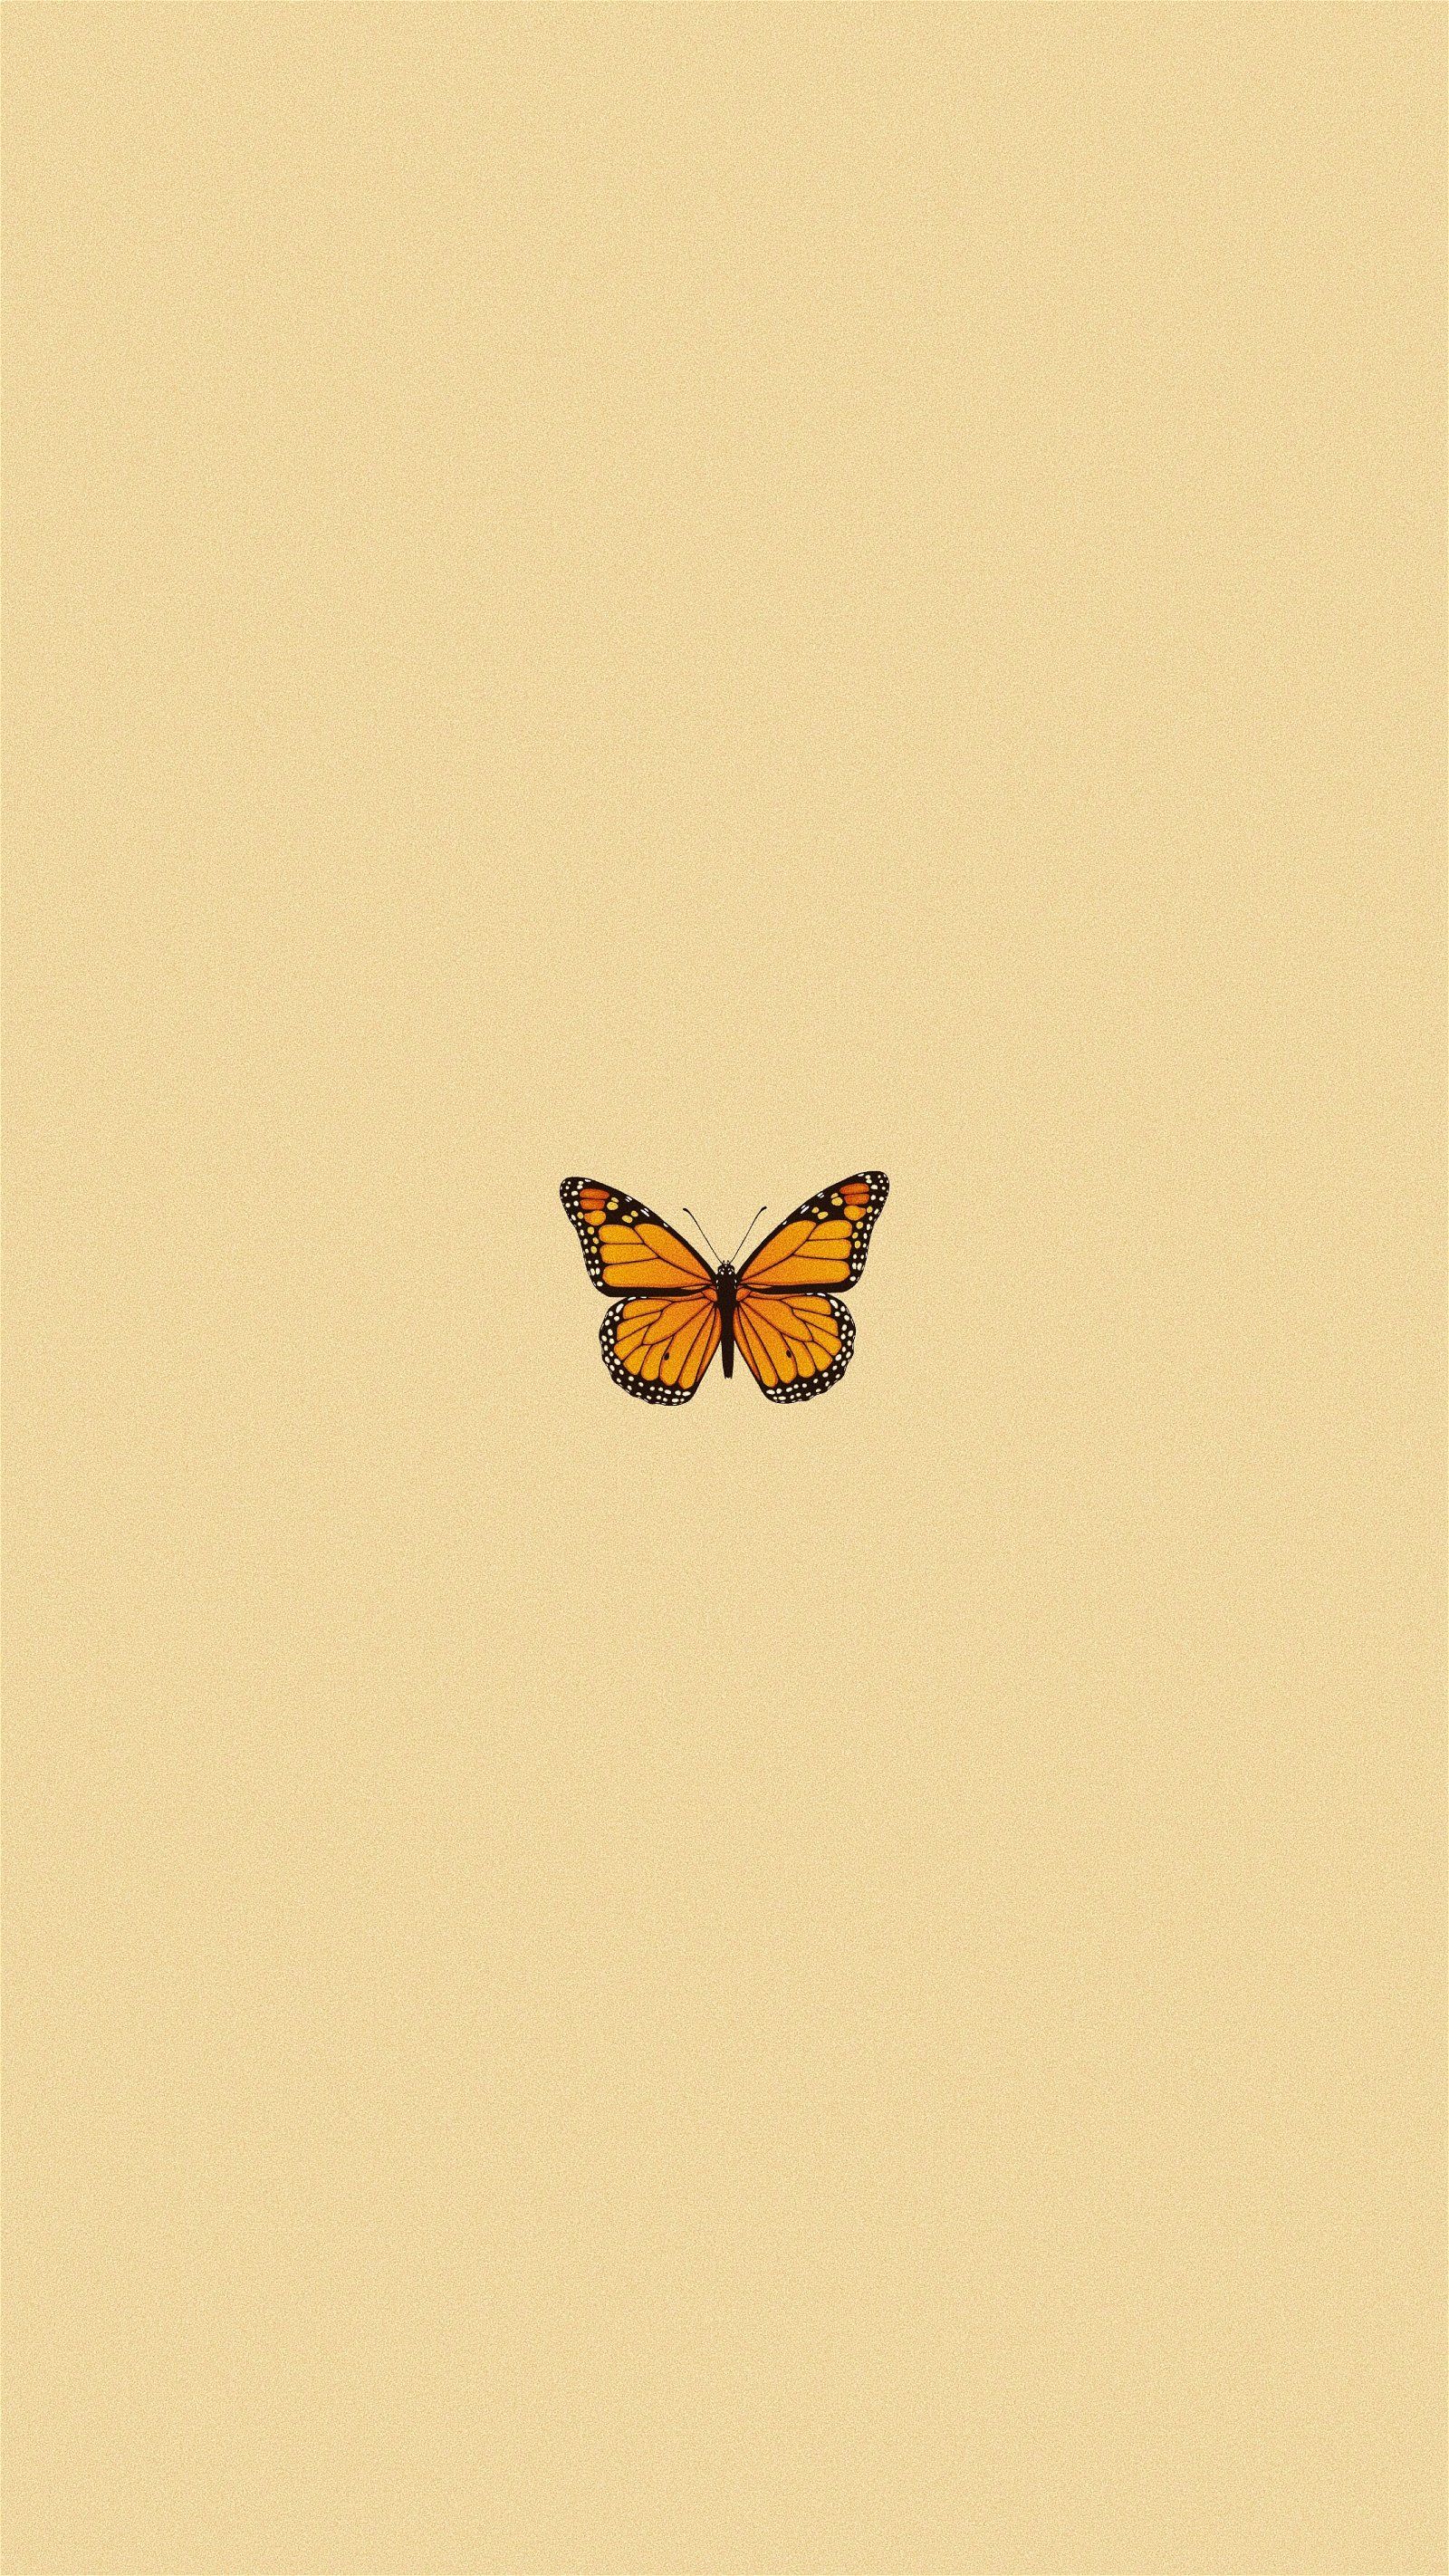  Schmetterling Hintergrundbild 1600x2844. Yellow butterfly aesthetic Wallpaper Download